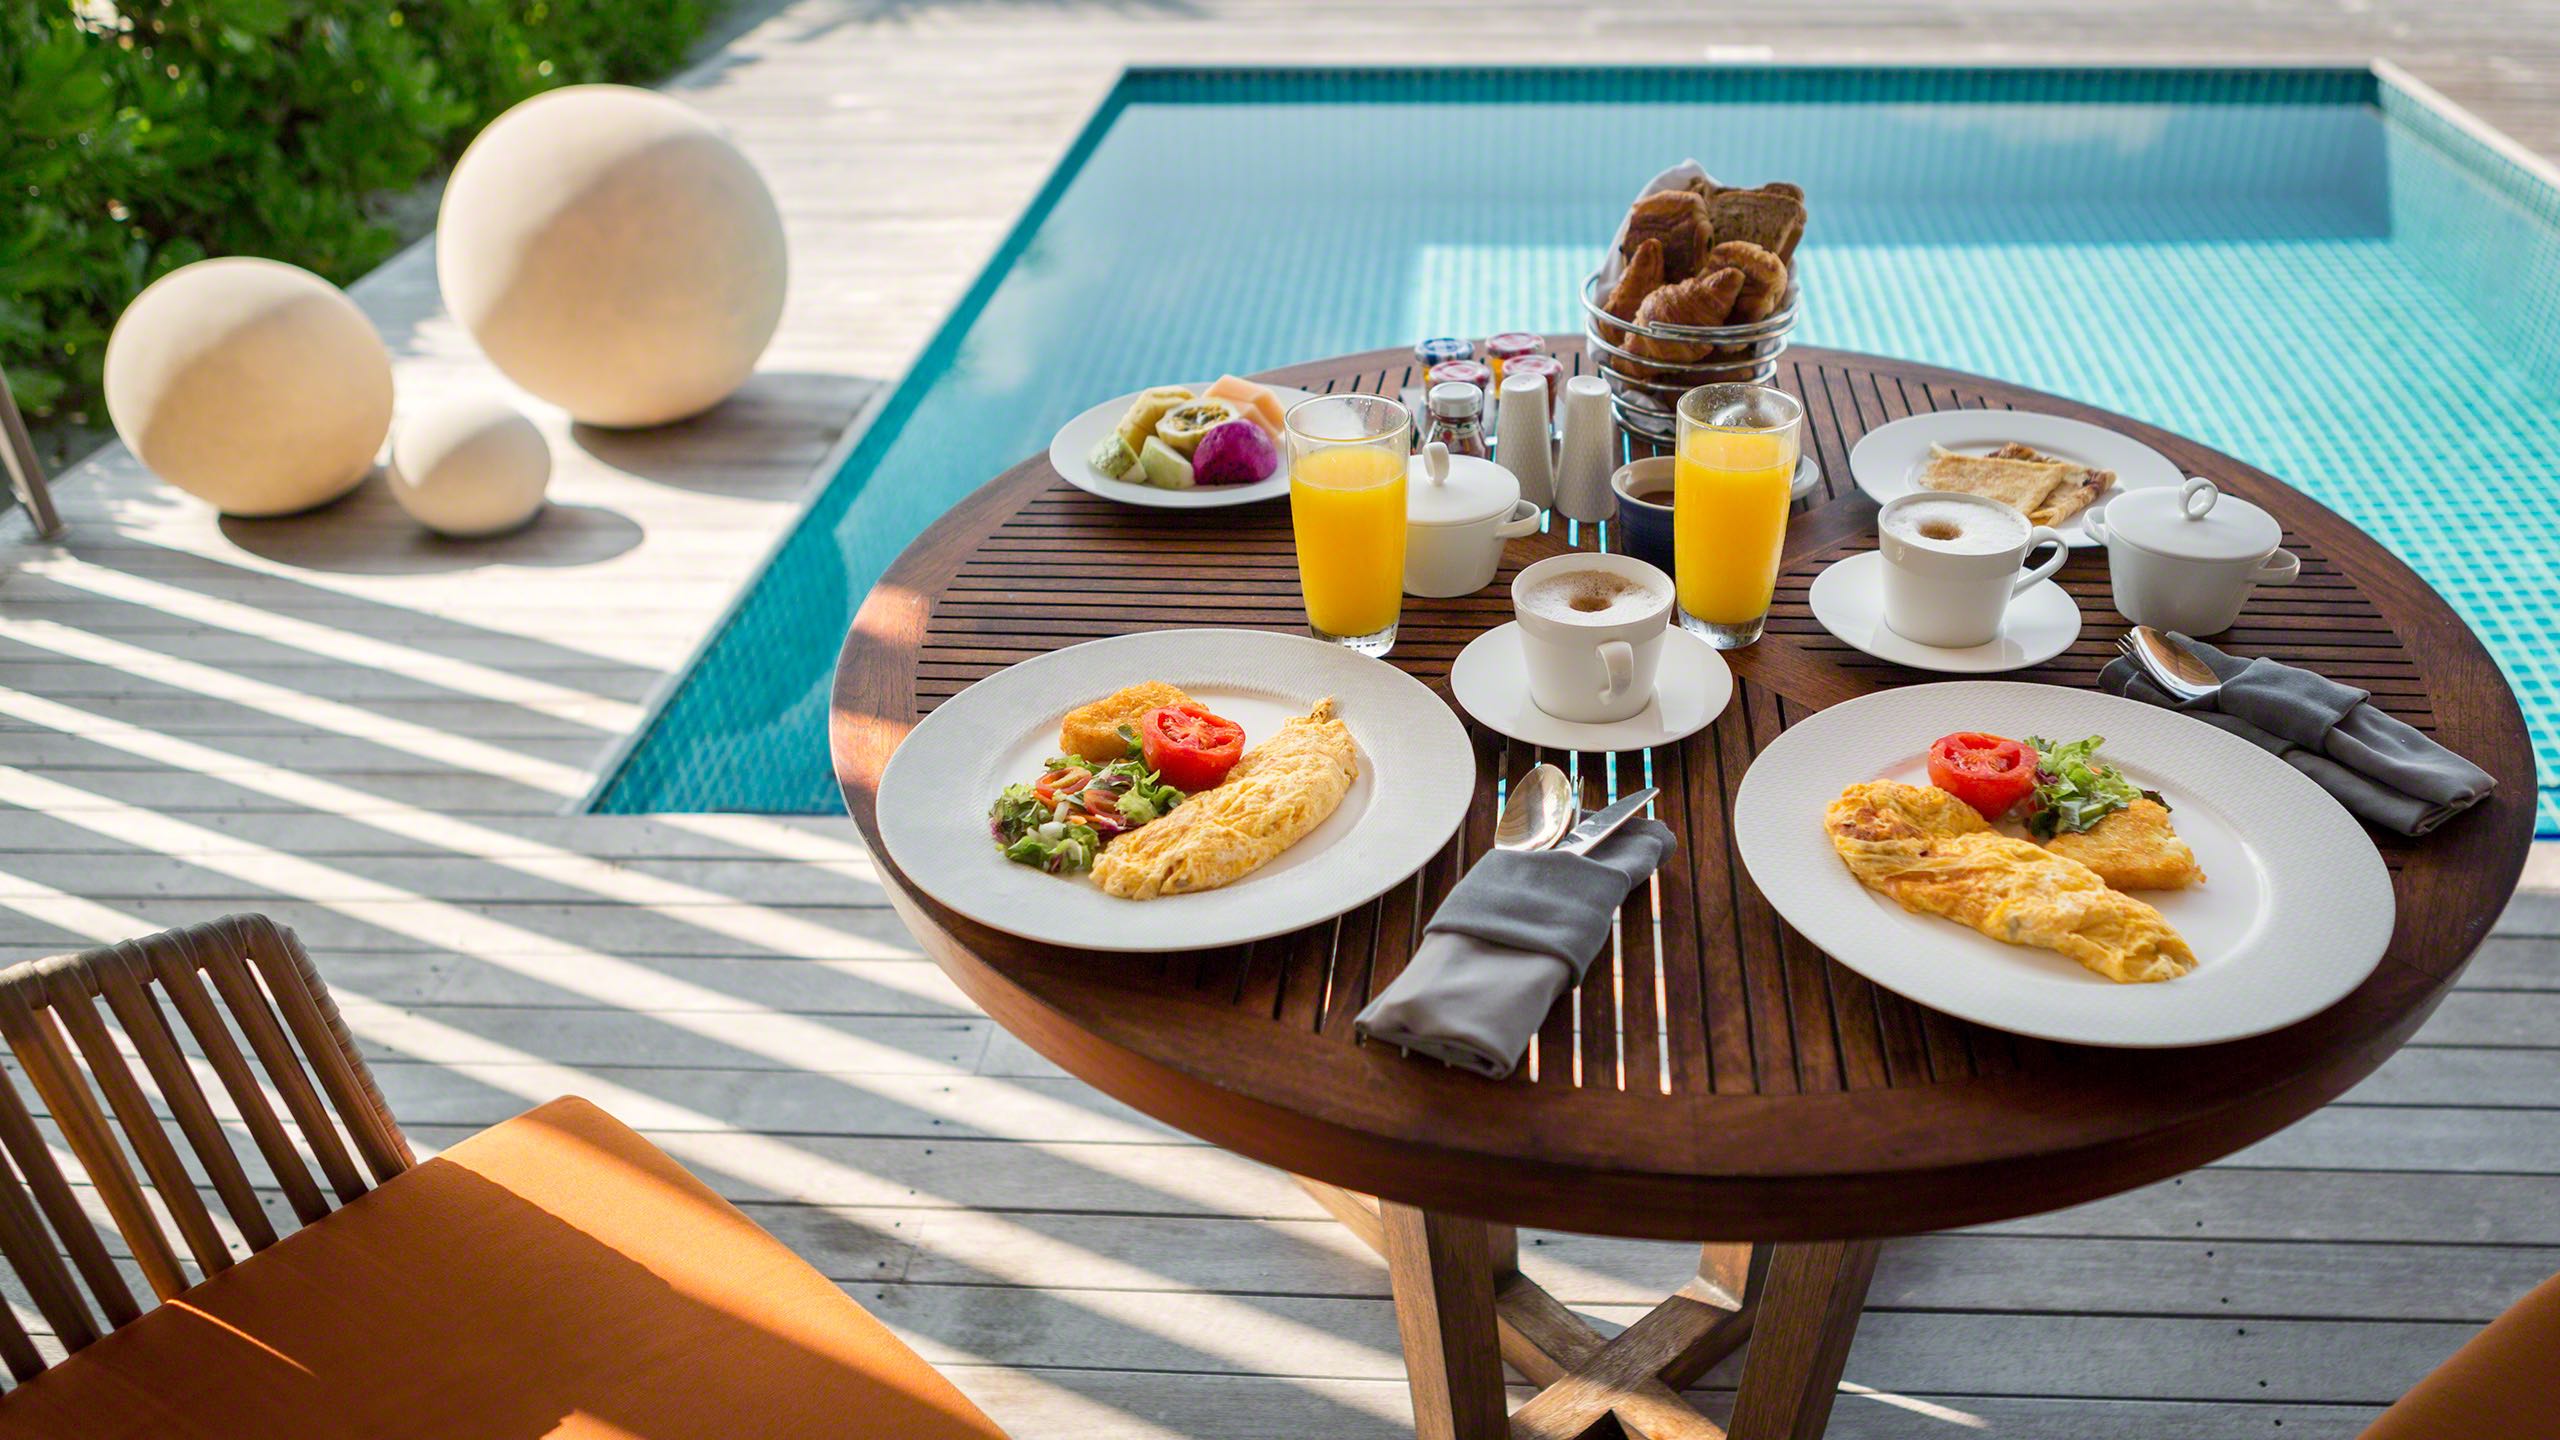 Paradiesisches Frühstück in der eigenen Villa am Pool servieren lassen, auch dieser Service ist inklusive ©Mirco Seyfert